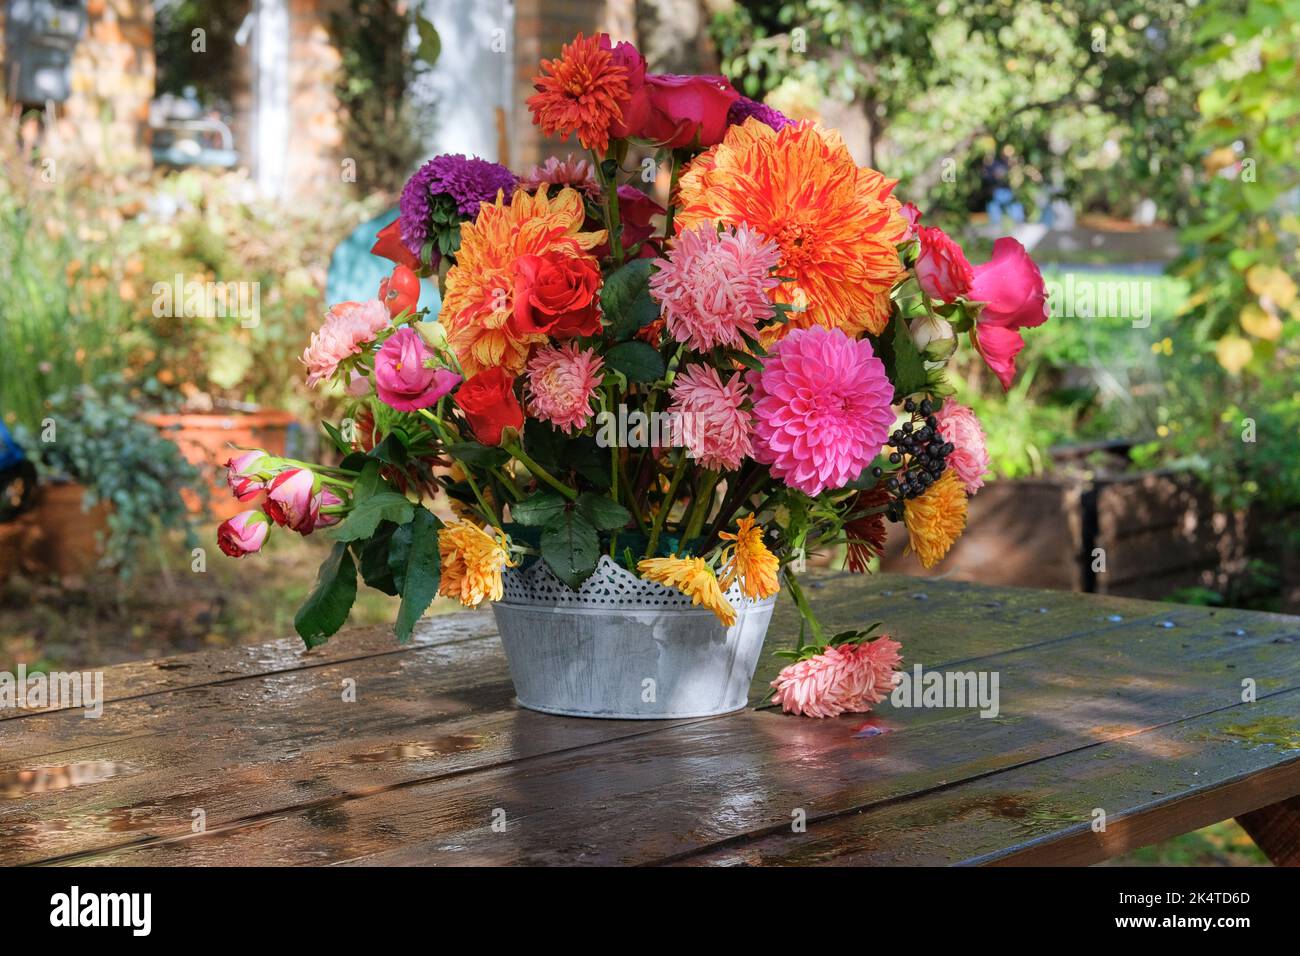 Fiori: rose, asters, dahilia nel giardino delle mele su un tavolo di legno. Design floristico. Giorno di sole Foto Stock